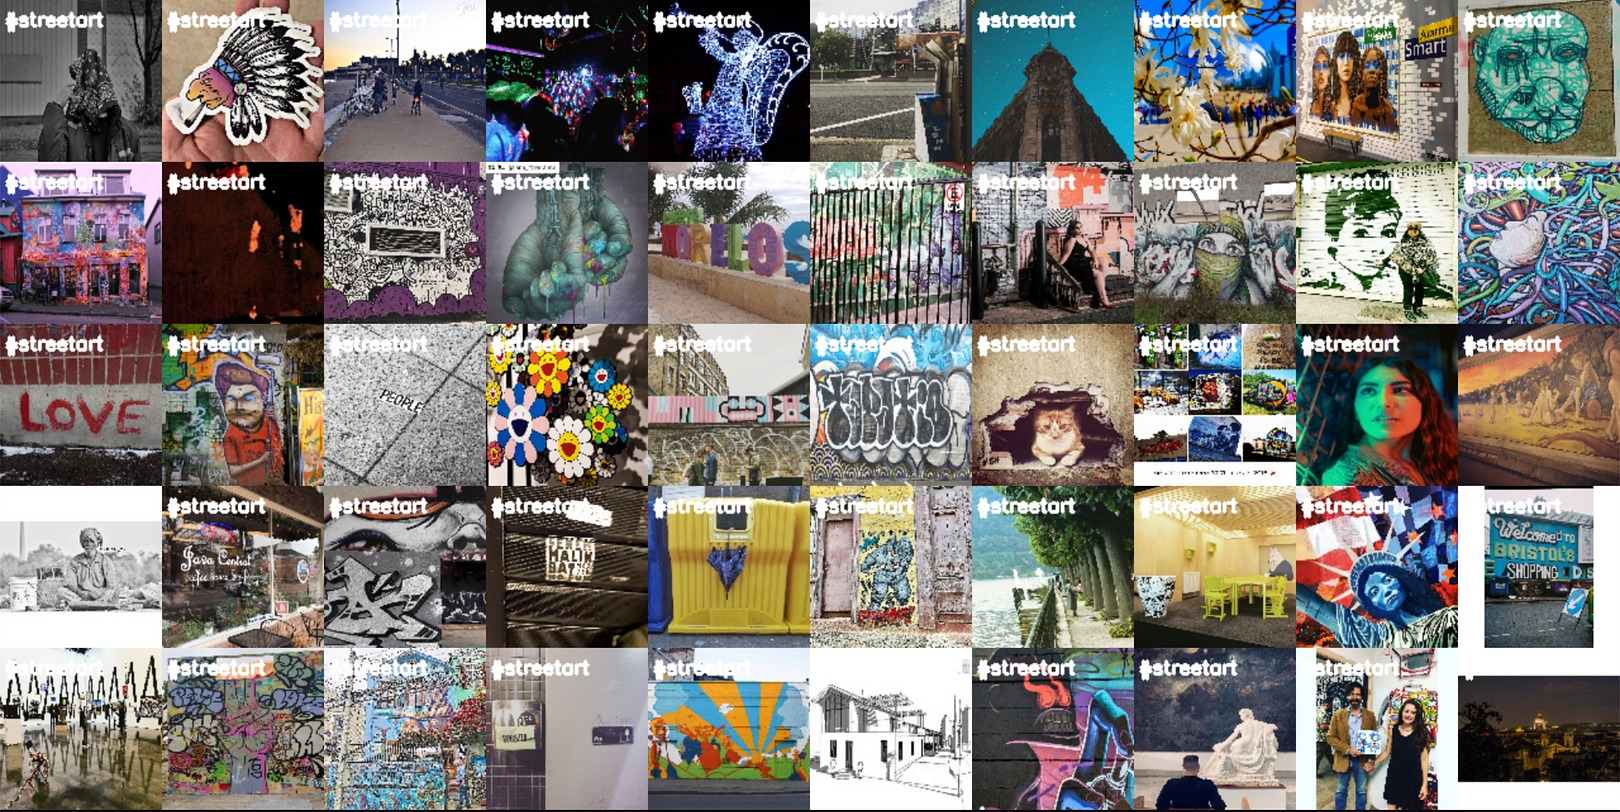 Instagram Street Art Dataset and Detection Model